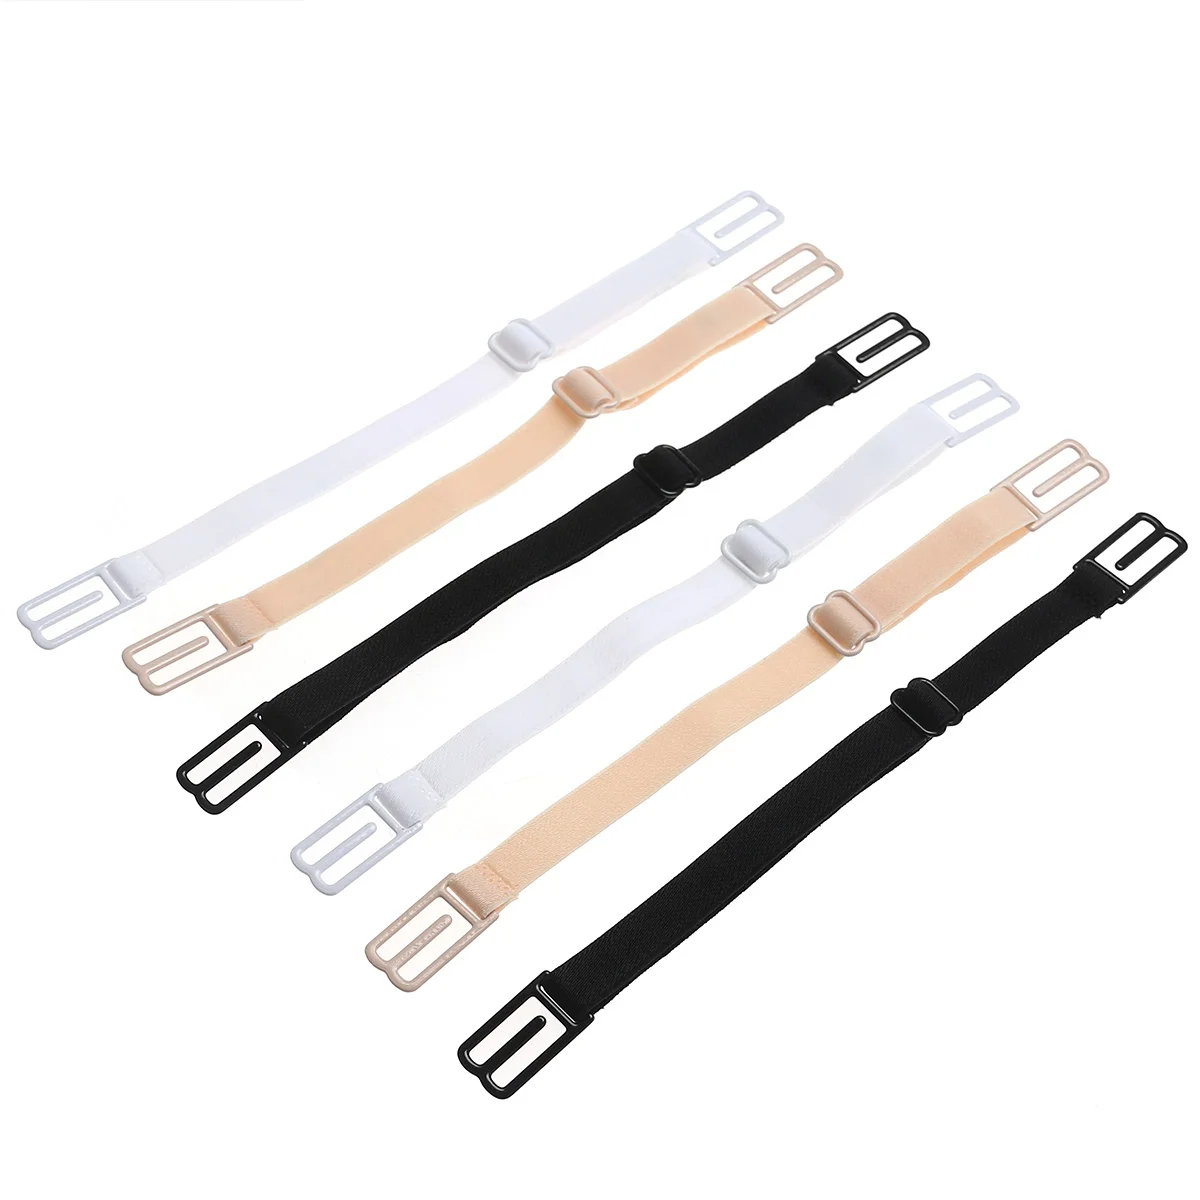 

3 пары регулируемых прозрачных съемных нейлоновых сменных ремней (черный, кожаный цвет, белый)